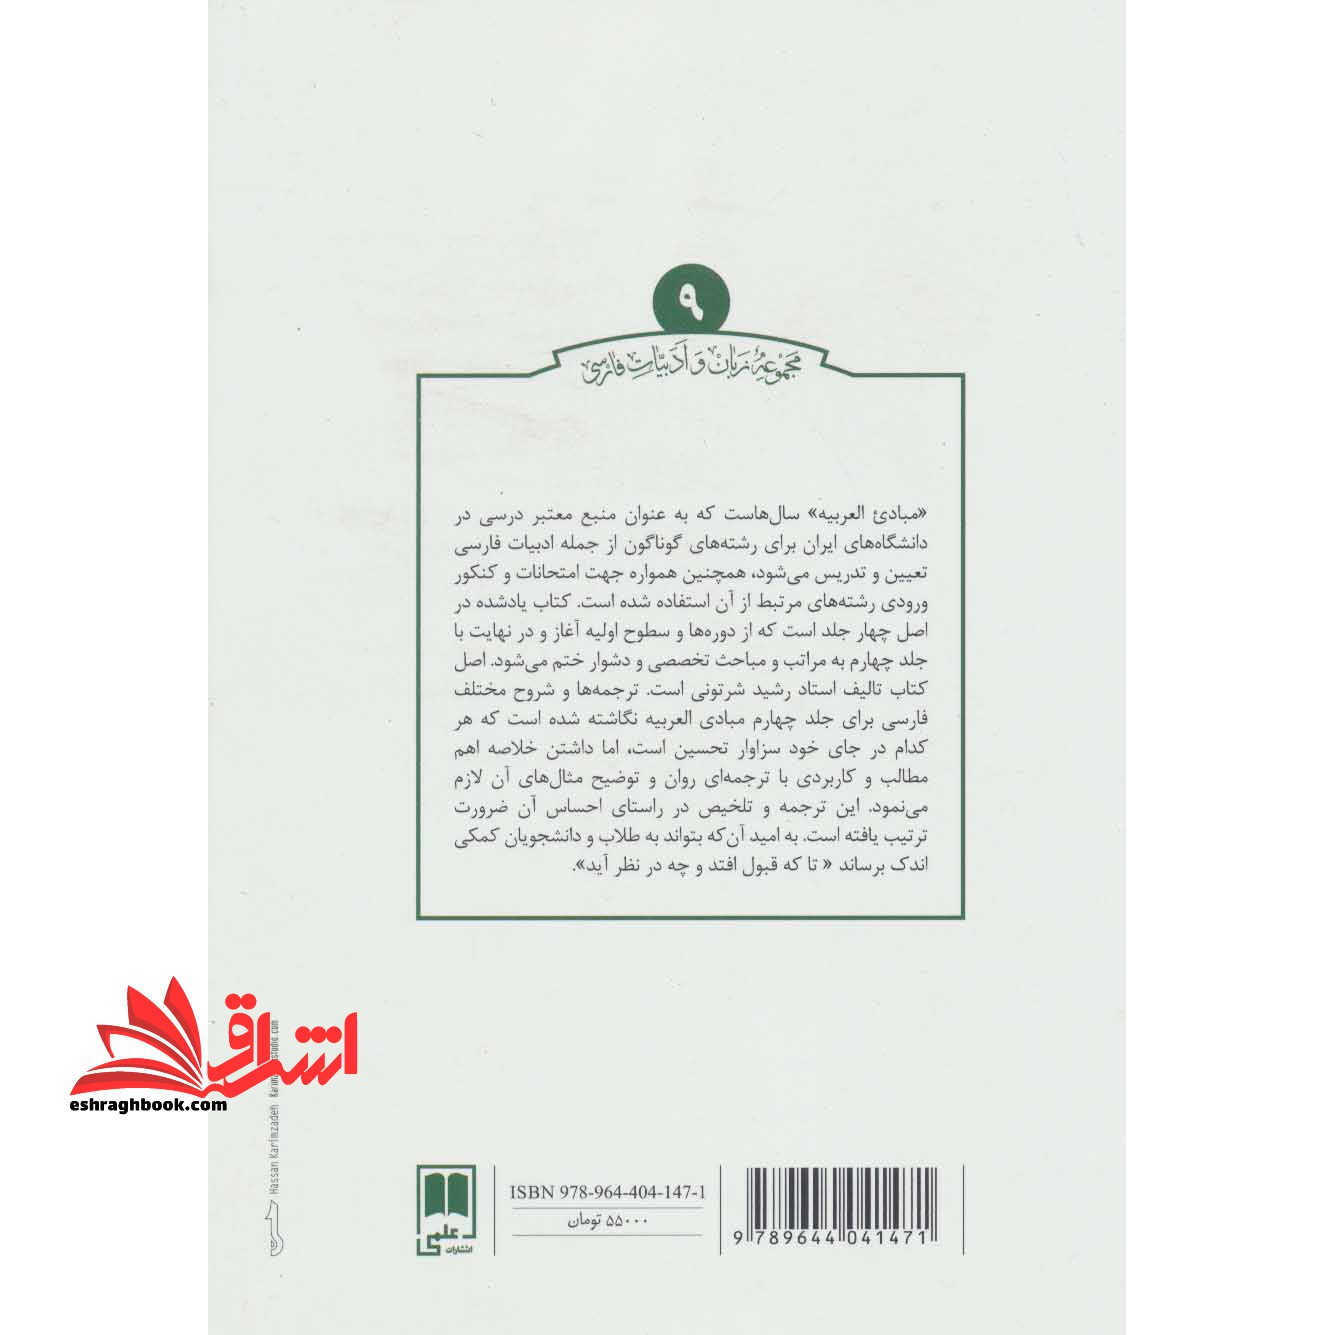 مبادی العربیه جلد ۴ چهارم همراه با نمونه سوالات عربی دوره های ارشد دانشگاه ها